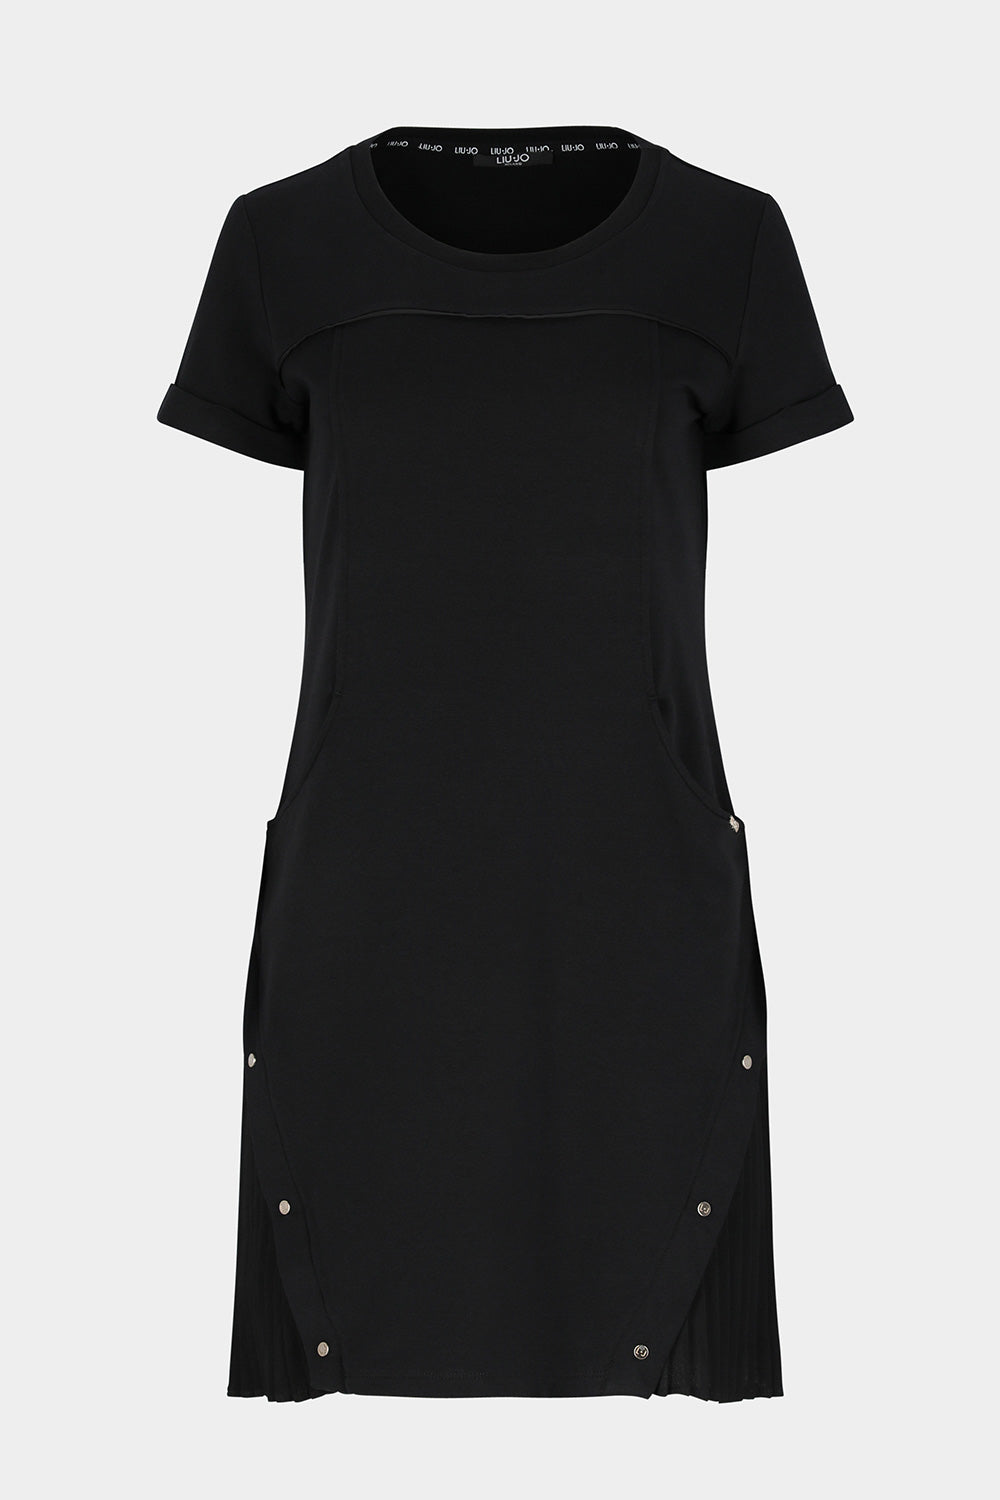 שמלת טי שירט לנשים כפתורים LIU JO Vendome online | ונדום .